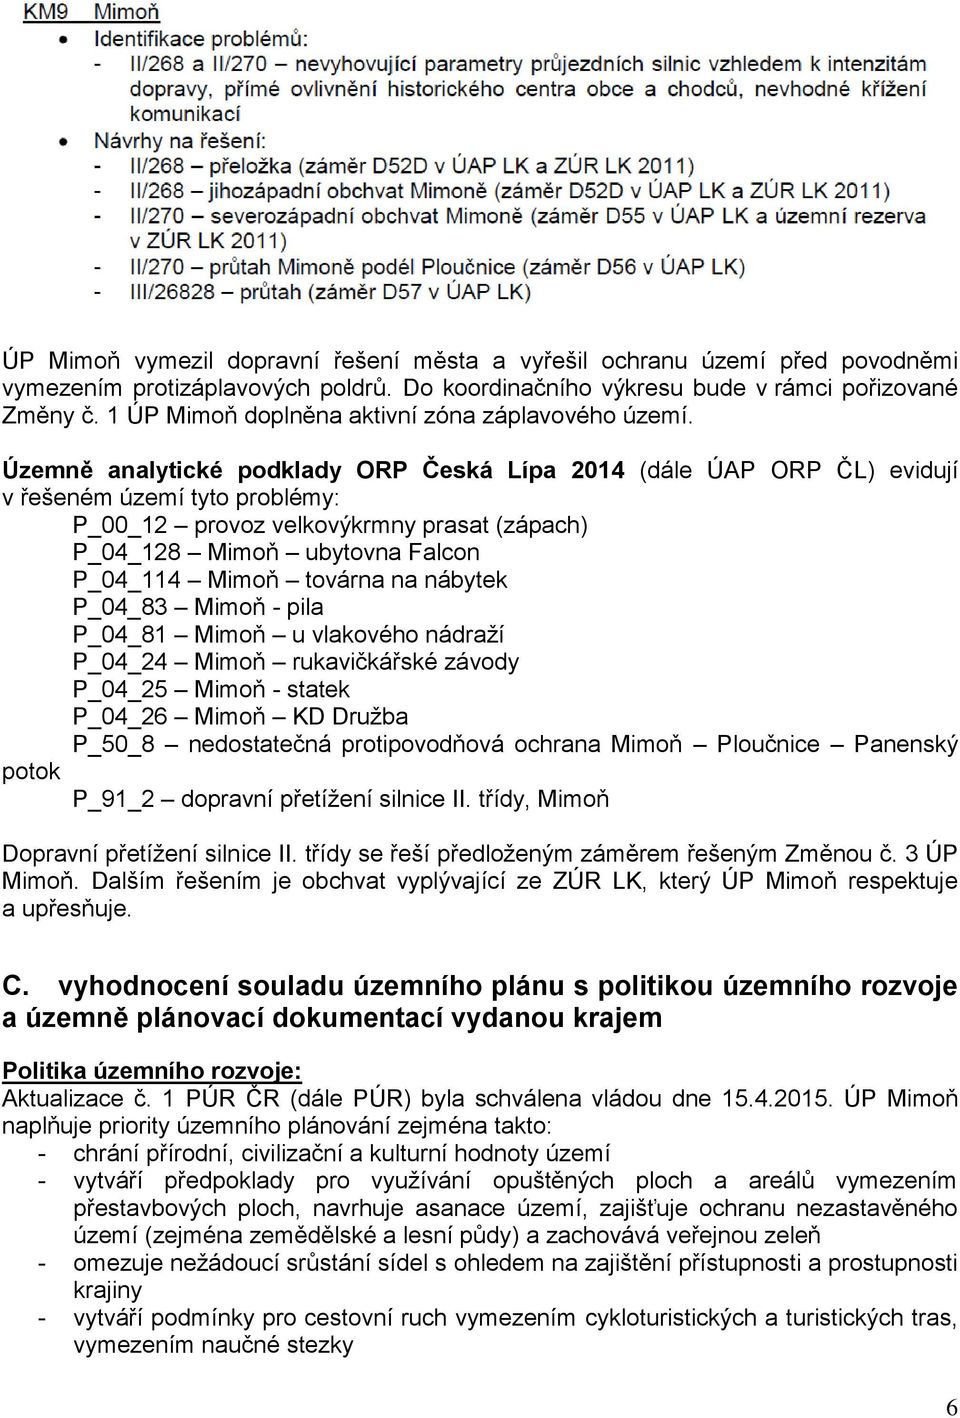 Územně analytické podklady ORP Česká Lípa 2014 (dále ÚAP ORP ČL) evidují v řešeném území tyto problémy: P_00_12 provoz velkovýkrmny prasat (zápach) P_04_128 Mimoň ubytovna Falcon P_04_114 Mimoň